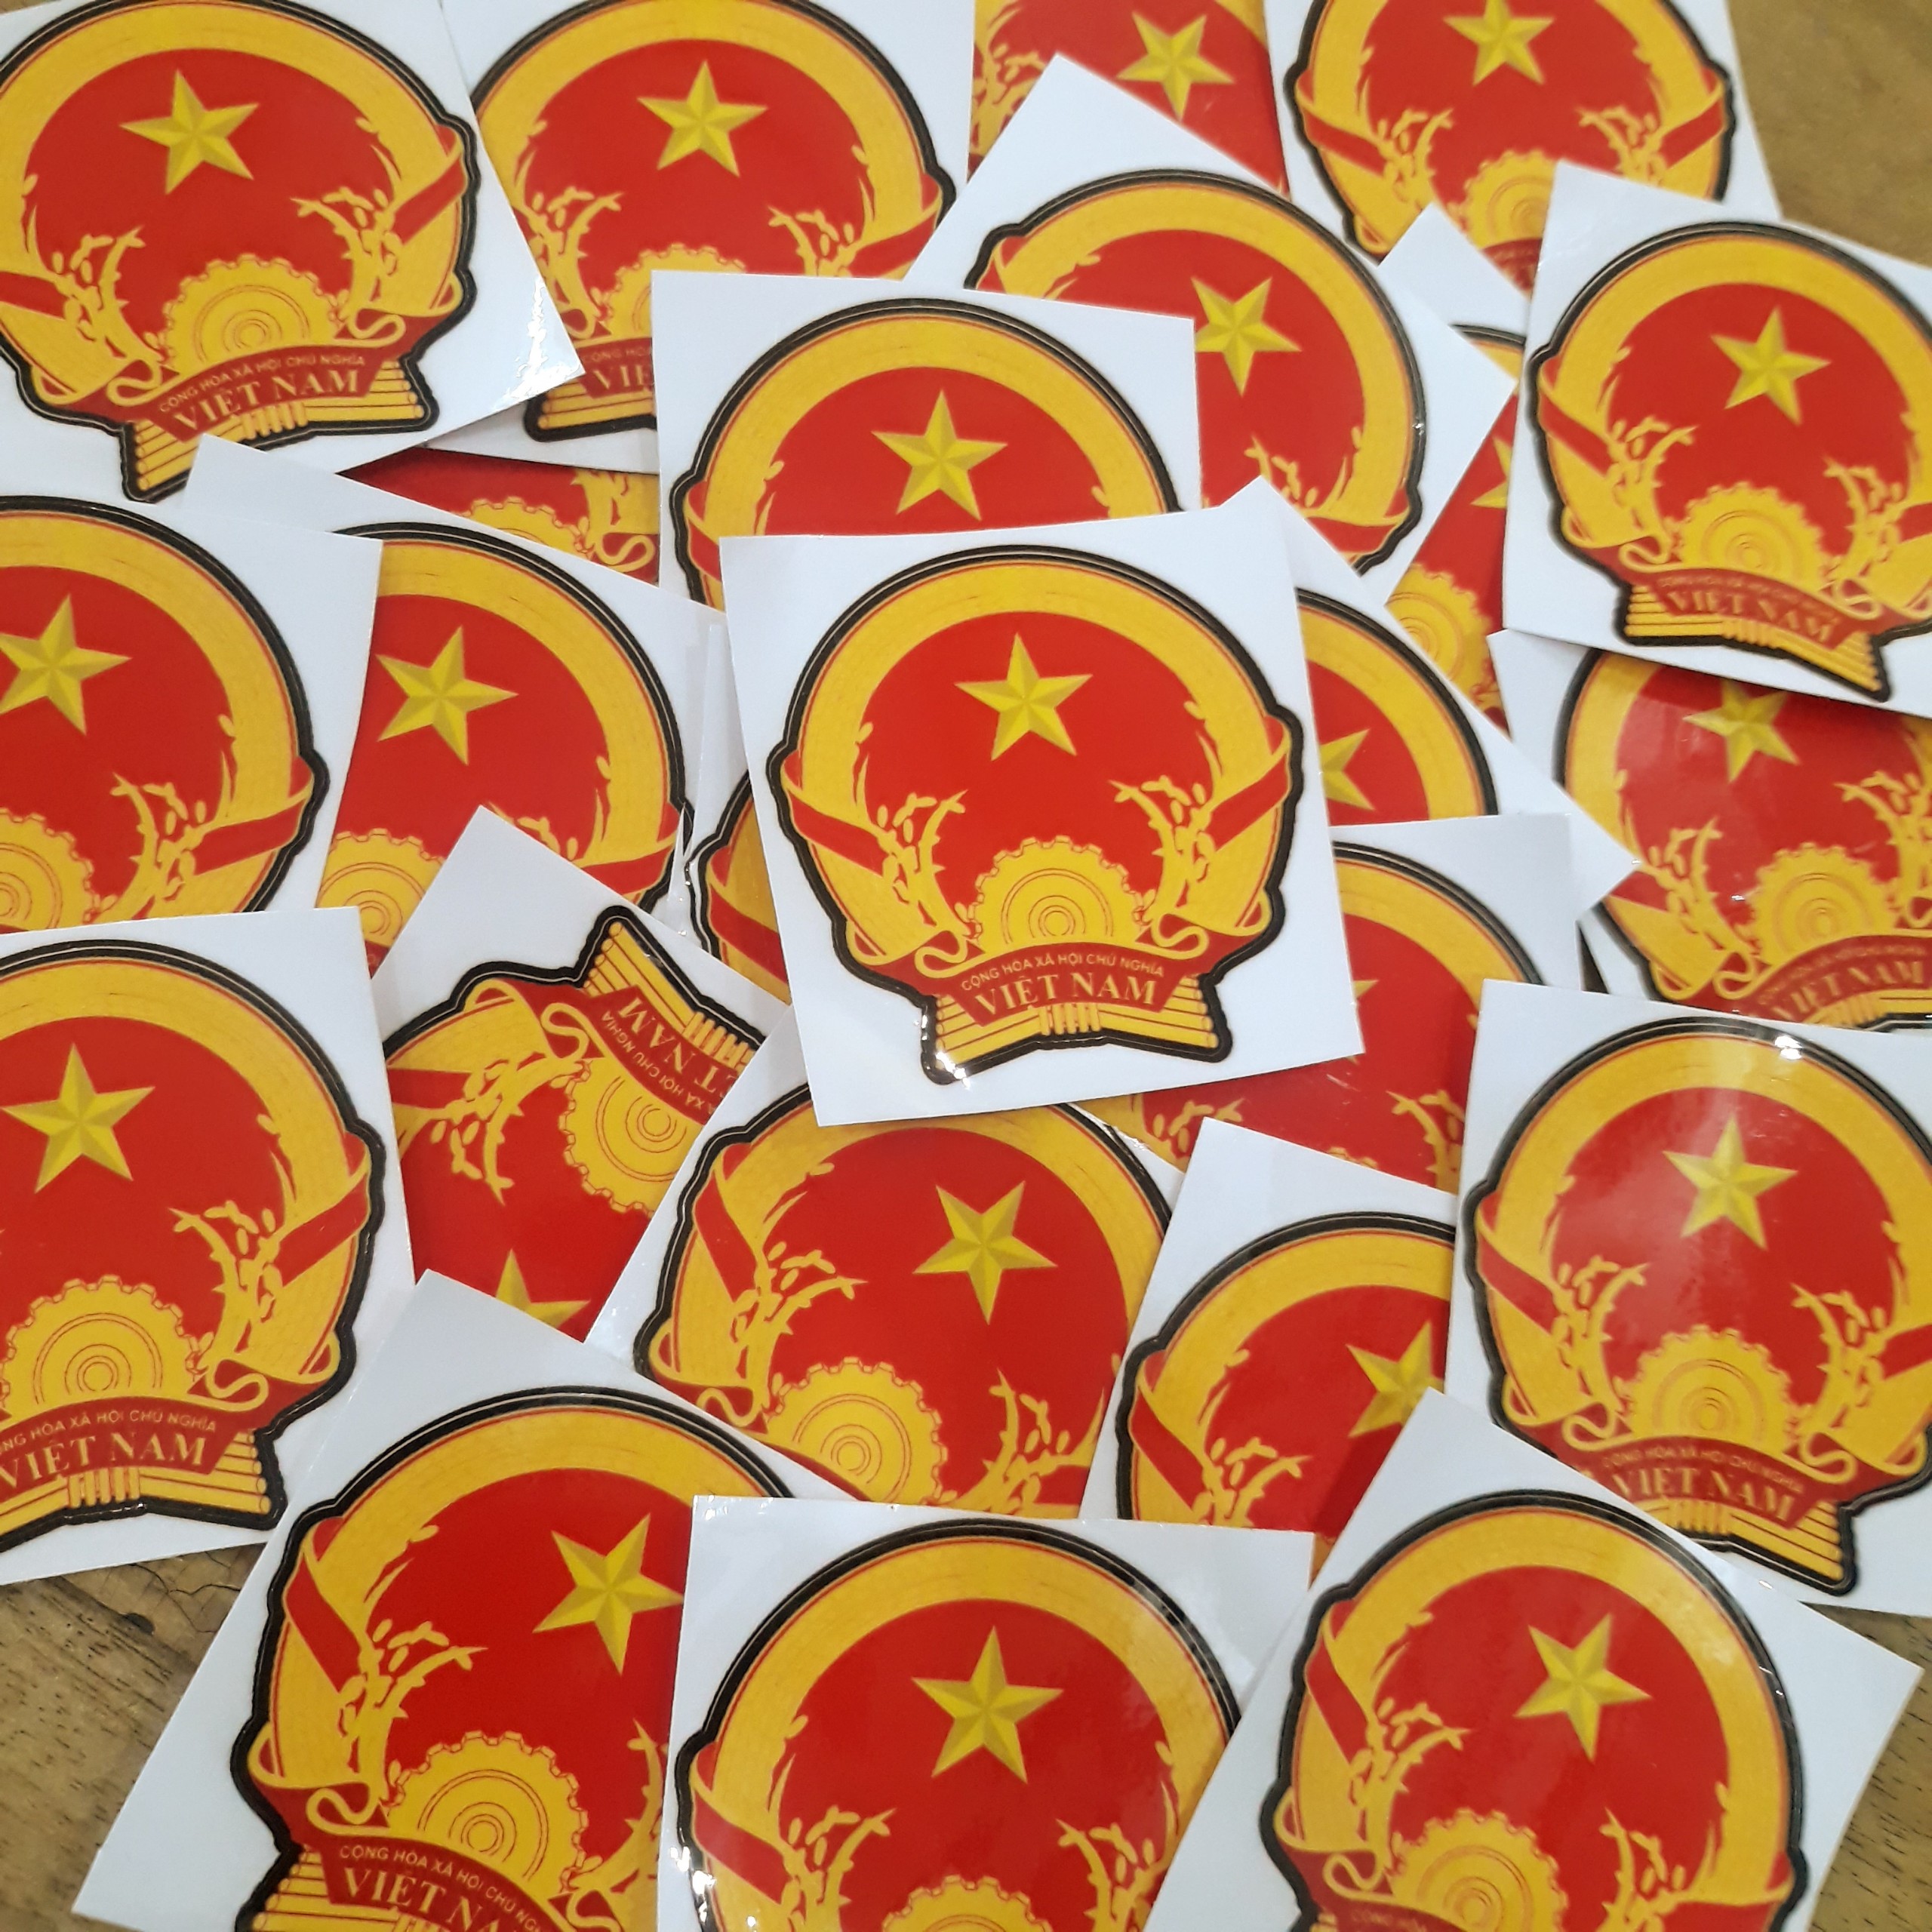 Sticker Quốc Huy, Tem Logo Đảng, Tem Quốc Dân Dán Laptop, Điện Thoại thumbnail